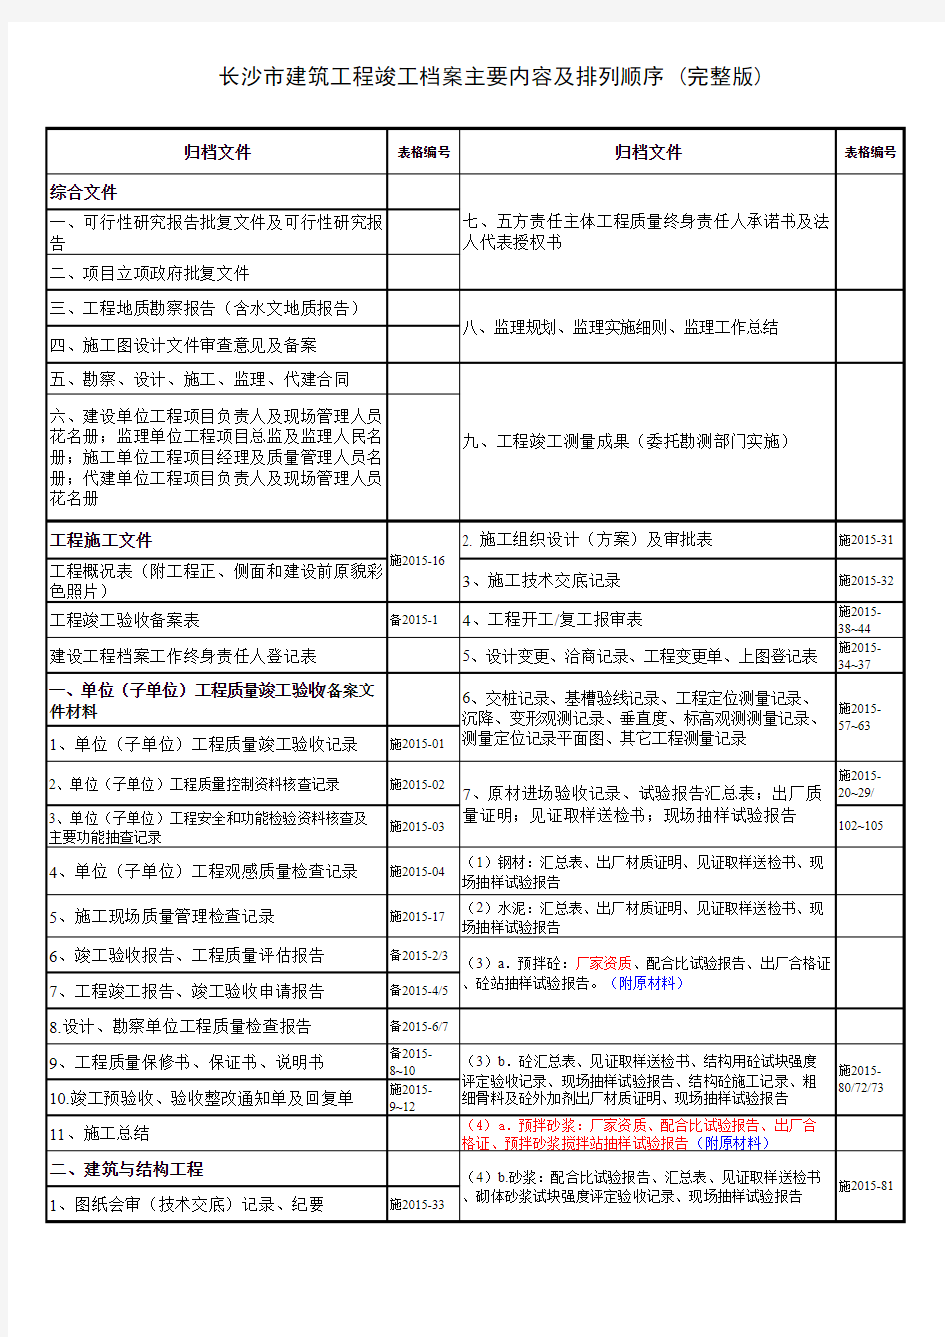 长沙市建筑工程竣工档案主要内容及排列顺序 (完整版)初验2015湖南版本